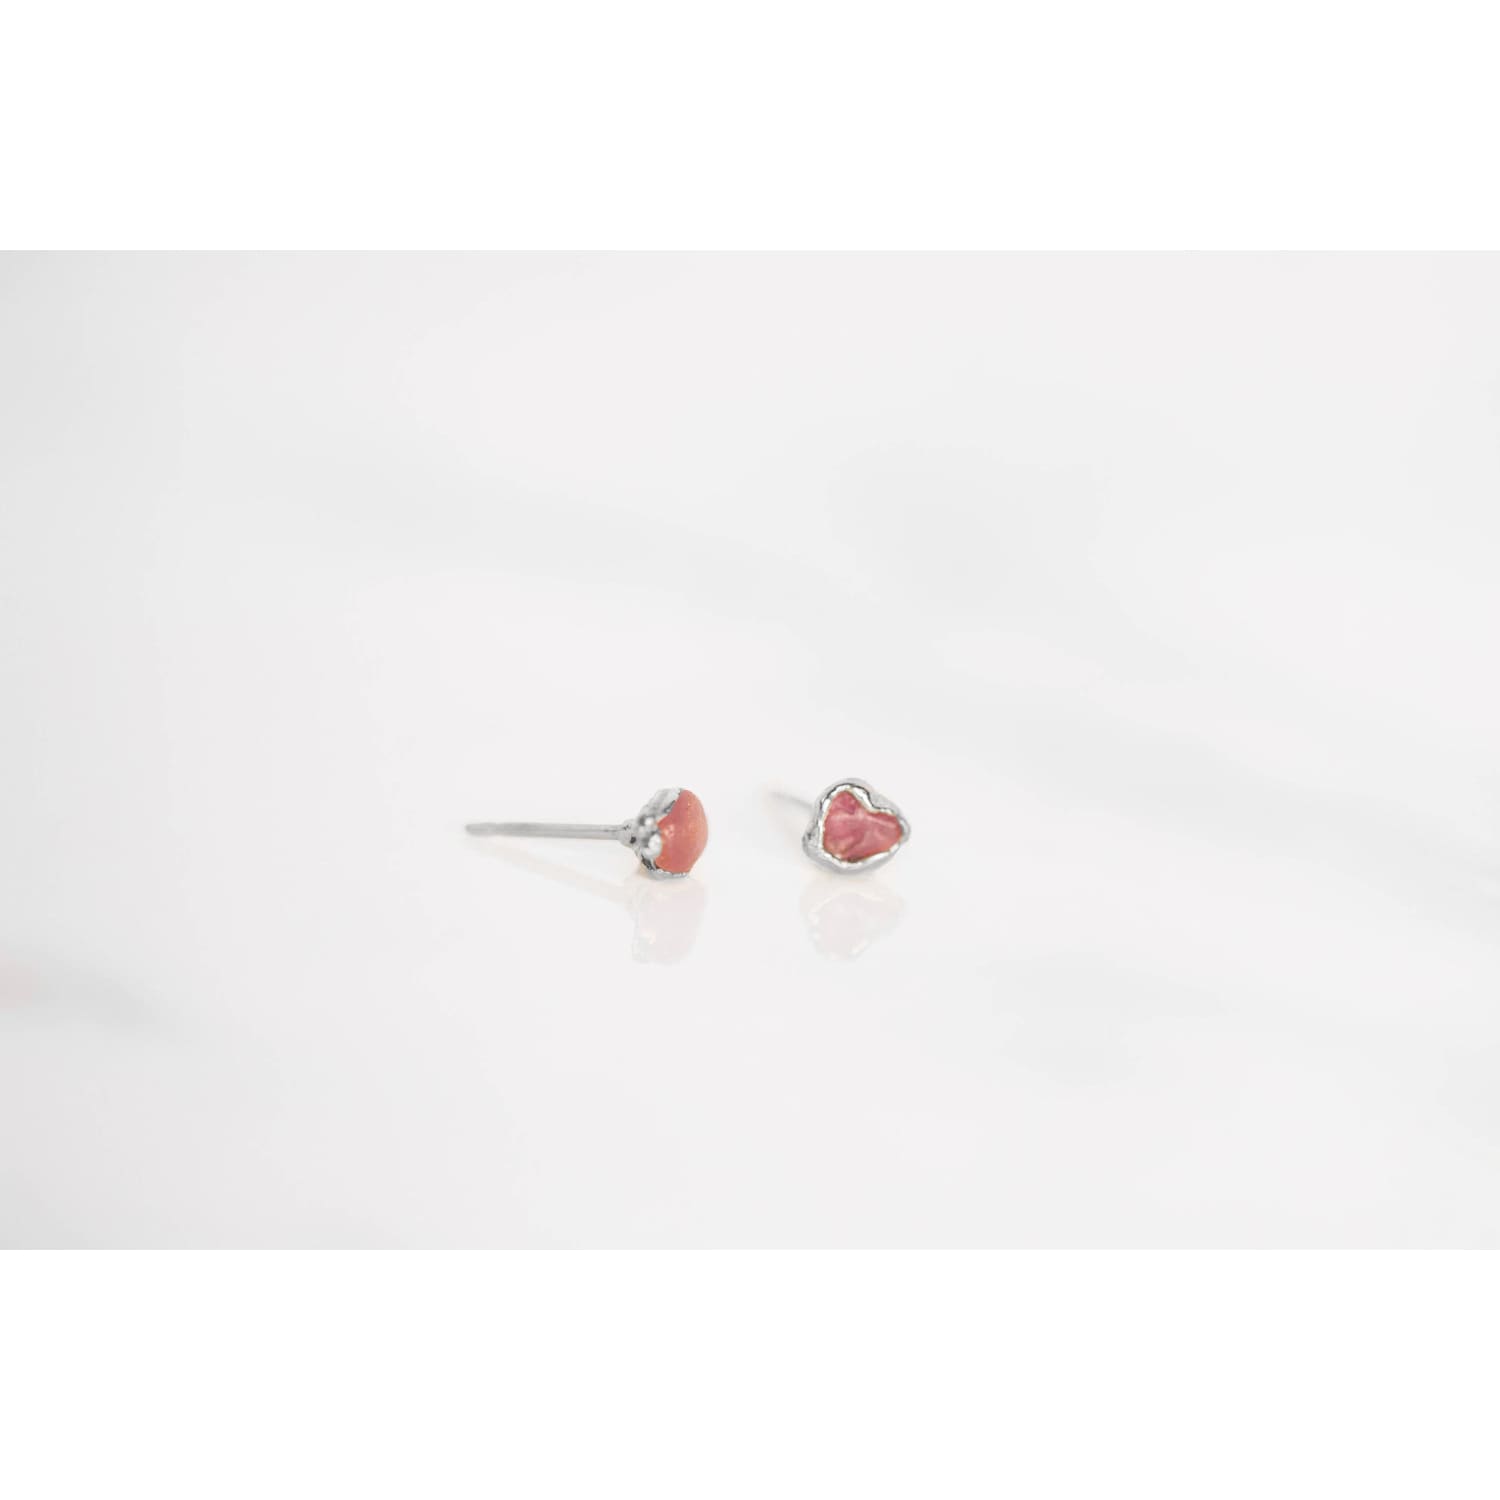 Dainty Raw Ruby Stud Earrings in Sterling Silver Gemstone